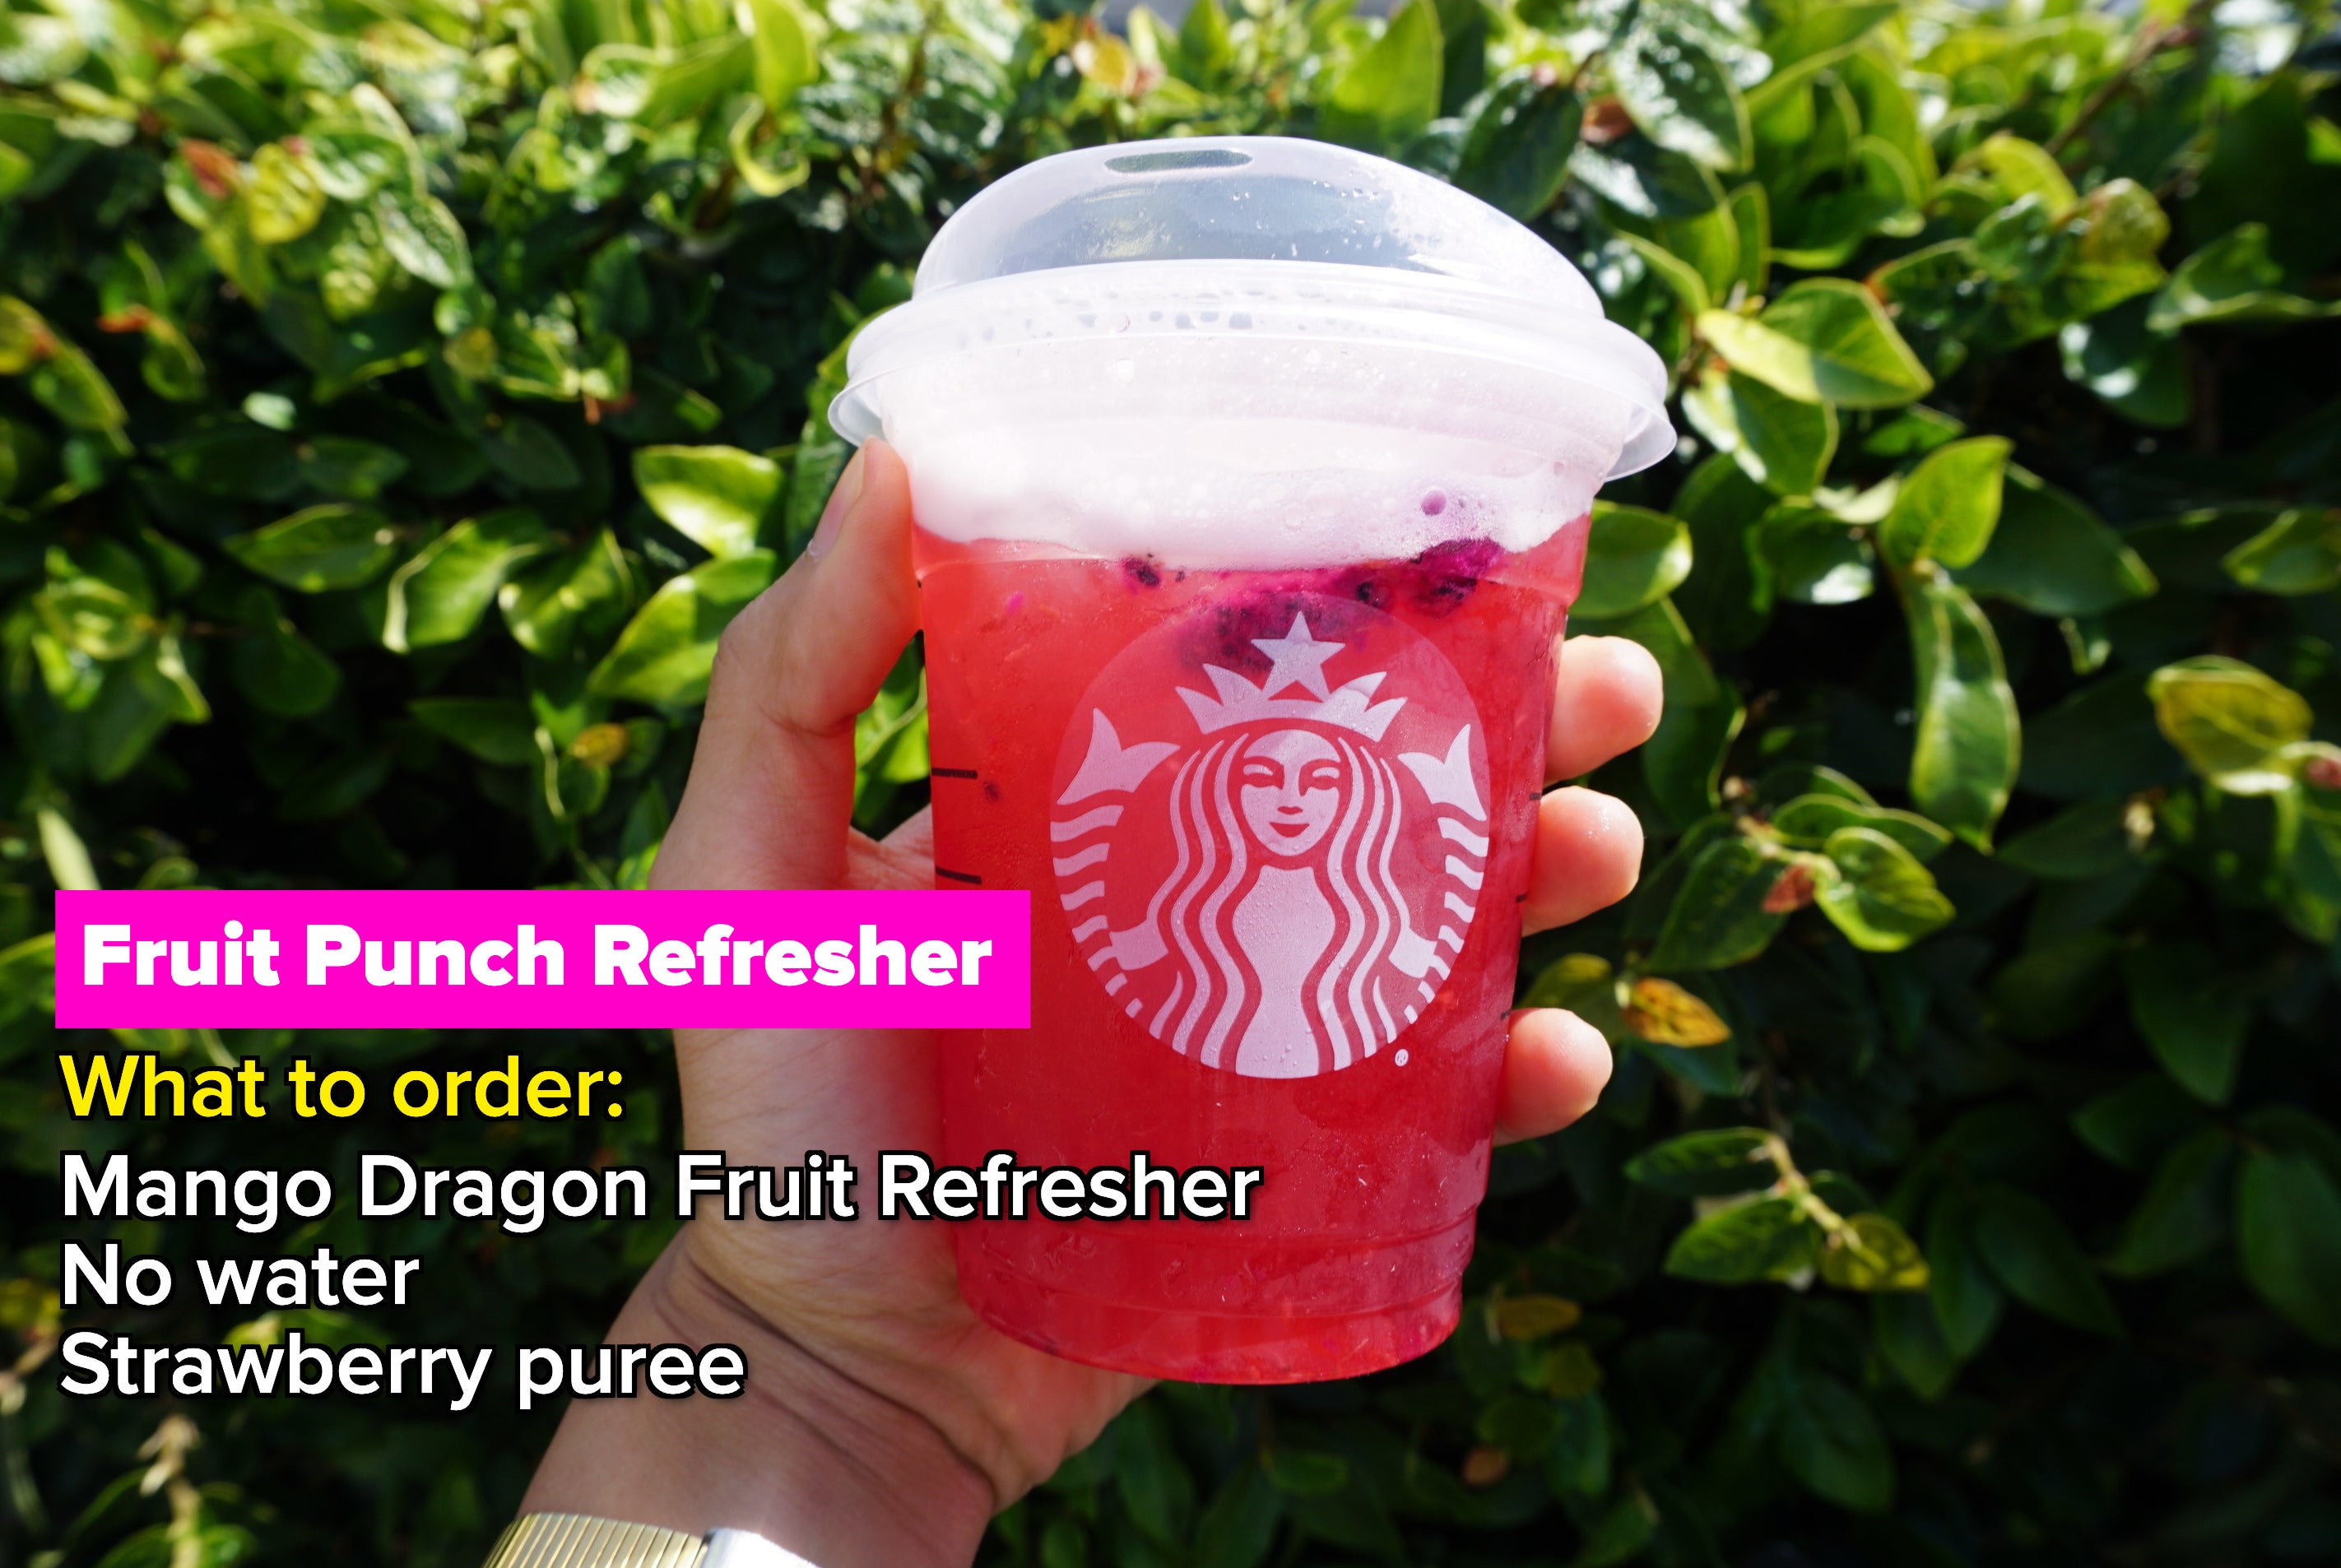 Starbucks Fruit Punch Refresher drink